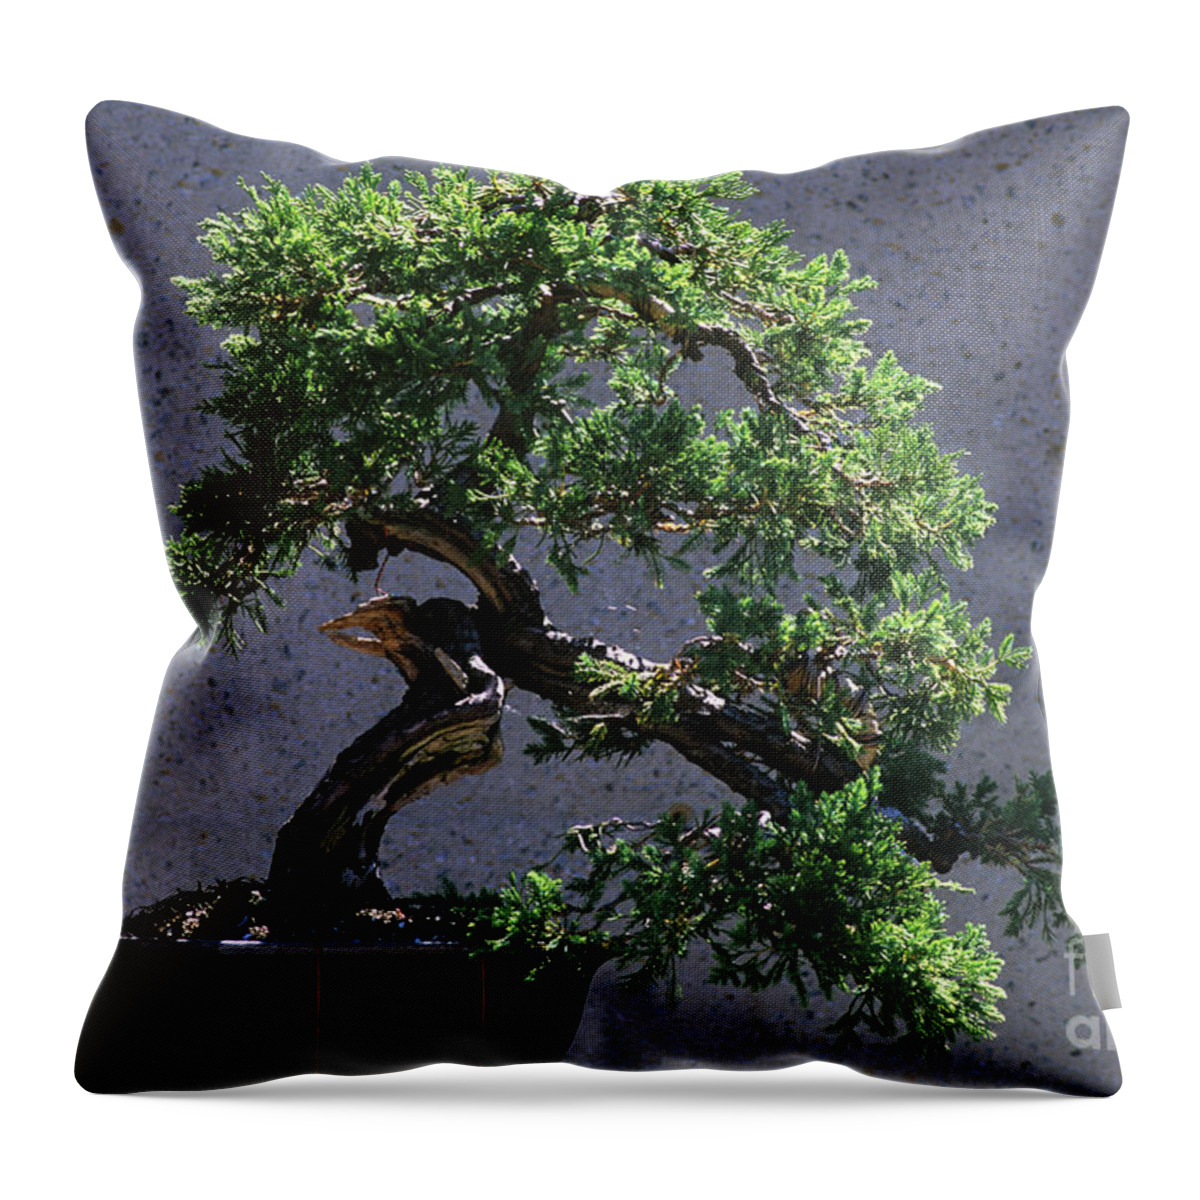 Creeping Juniper Bonsai Throw Pillow featuring the photograph Bonsai Tree #1 by J.C. Hurni